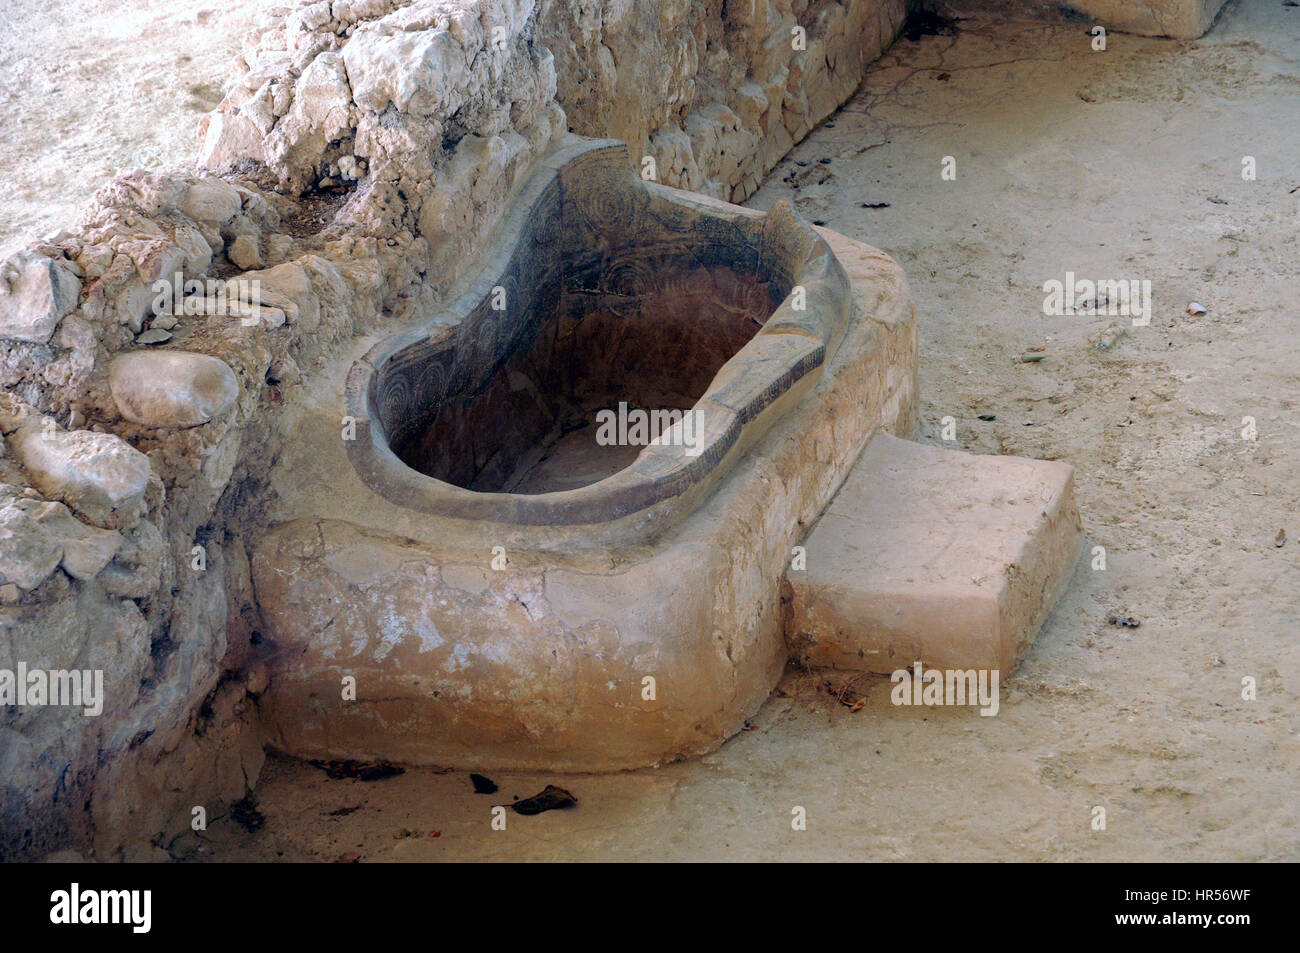 Il bagno Nestor il palazzo dove, accorning Omero Polycaste, figlia del re di Nestor bagnata Telemaco, il figlio di Ulisse. Foto Stock